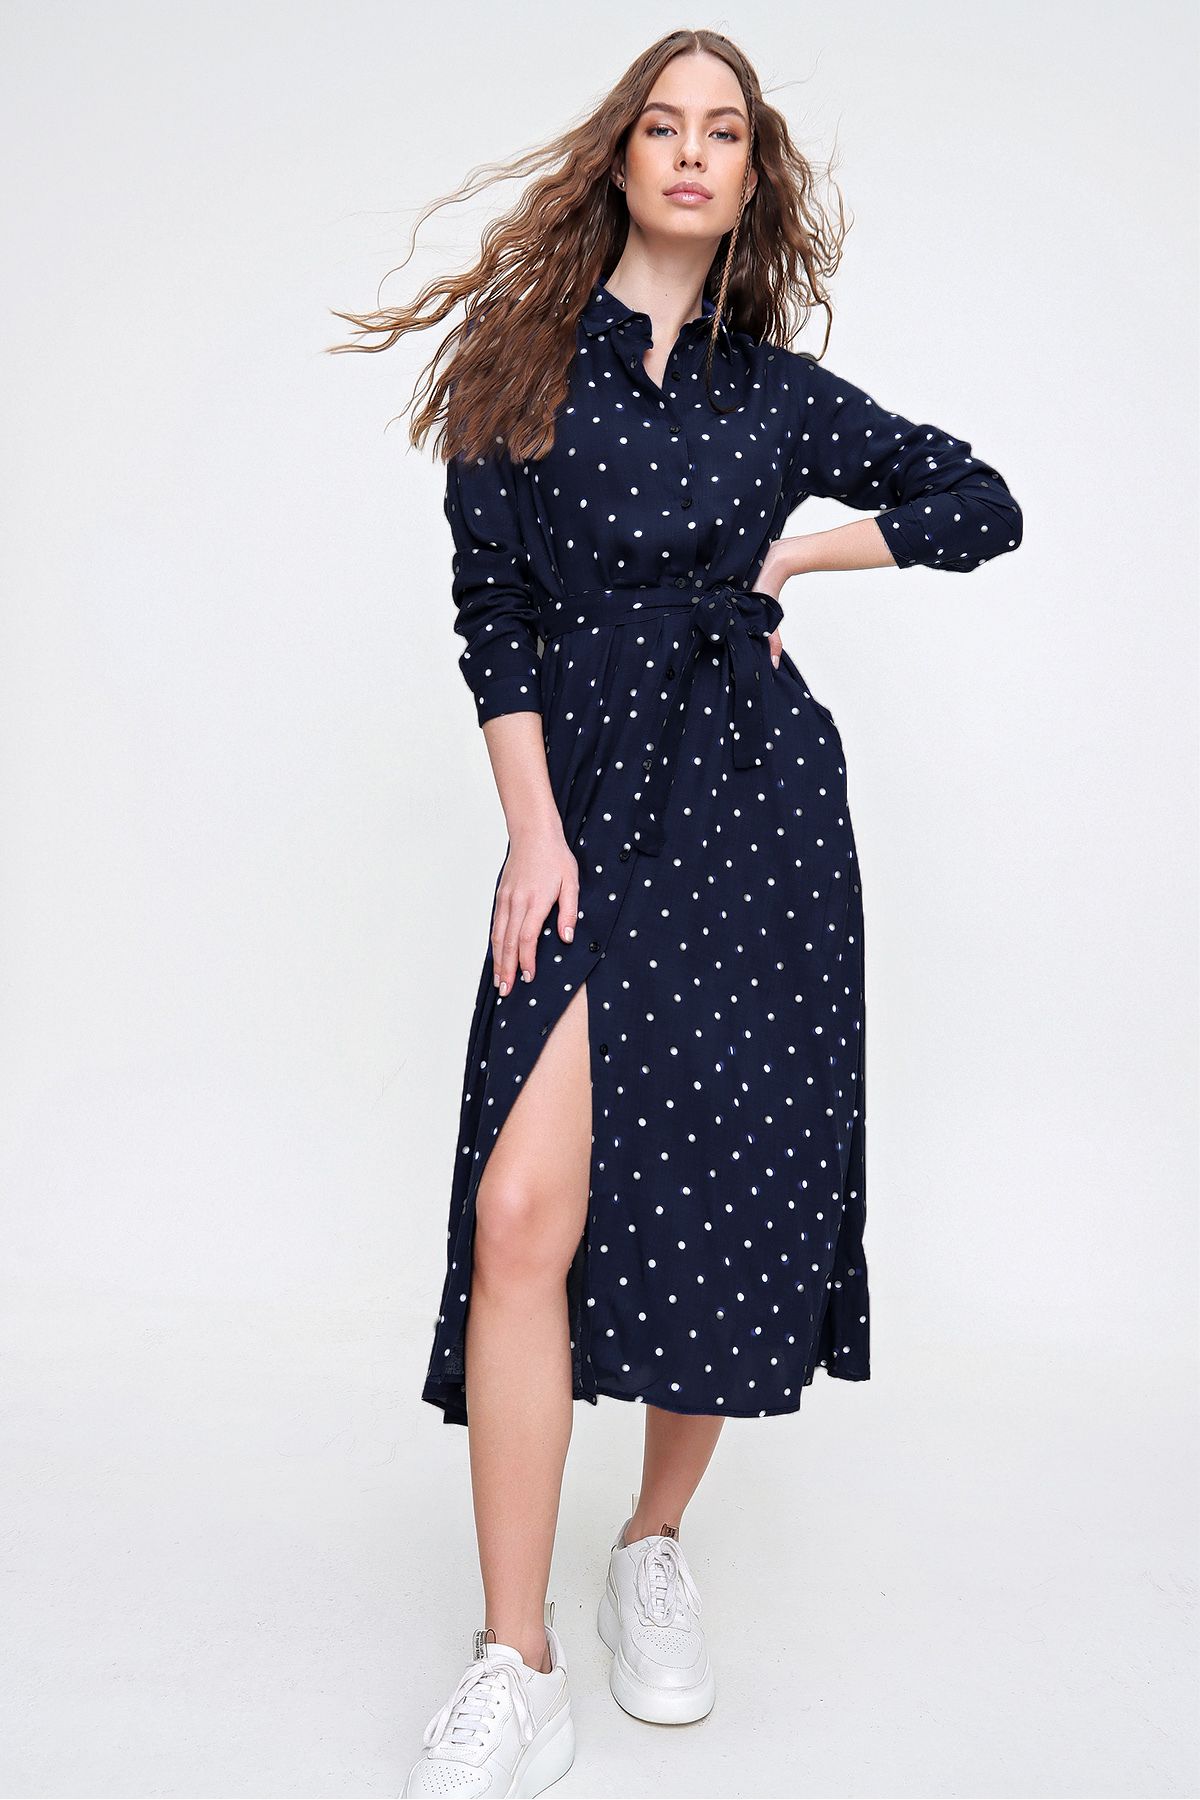 Trend Alaçatı Stili Kadın Okyanus Mavisi Puantiye Desenli Dokuma Viscon Gömlek Elbise ALC-X6247